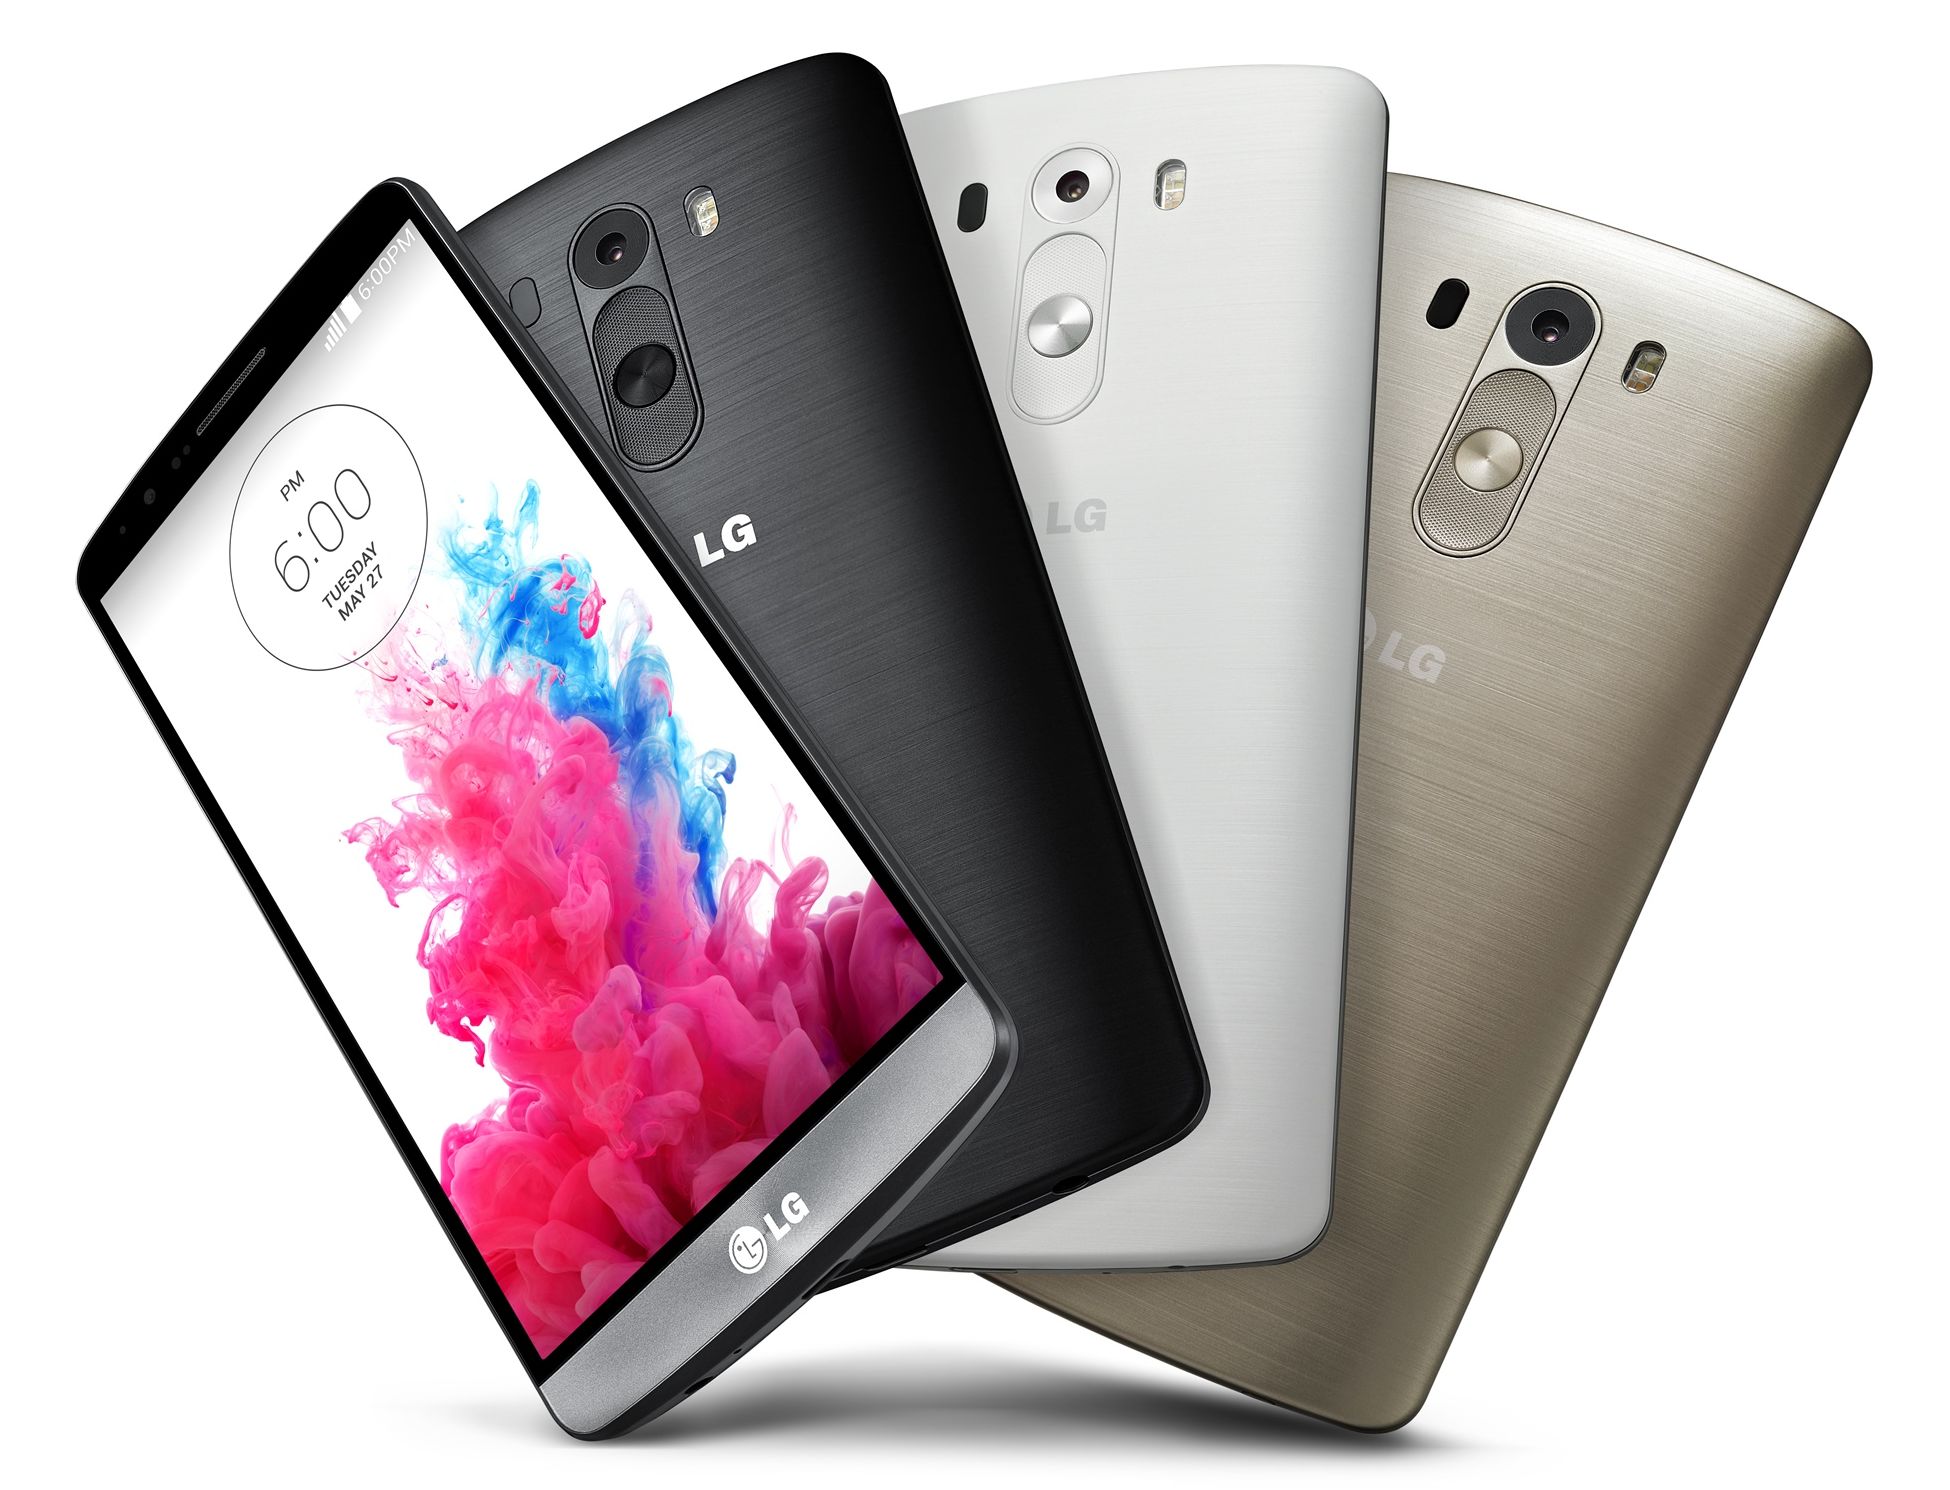 Το LG G3 είναι απλό, γι'αυτό είναι έξυπνο, υποστηρίζει η LG